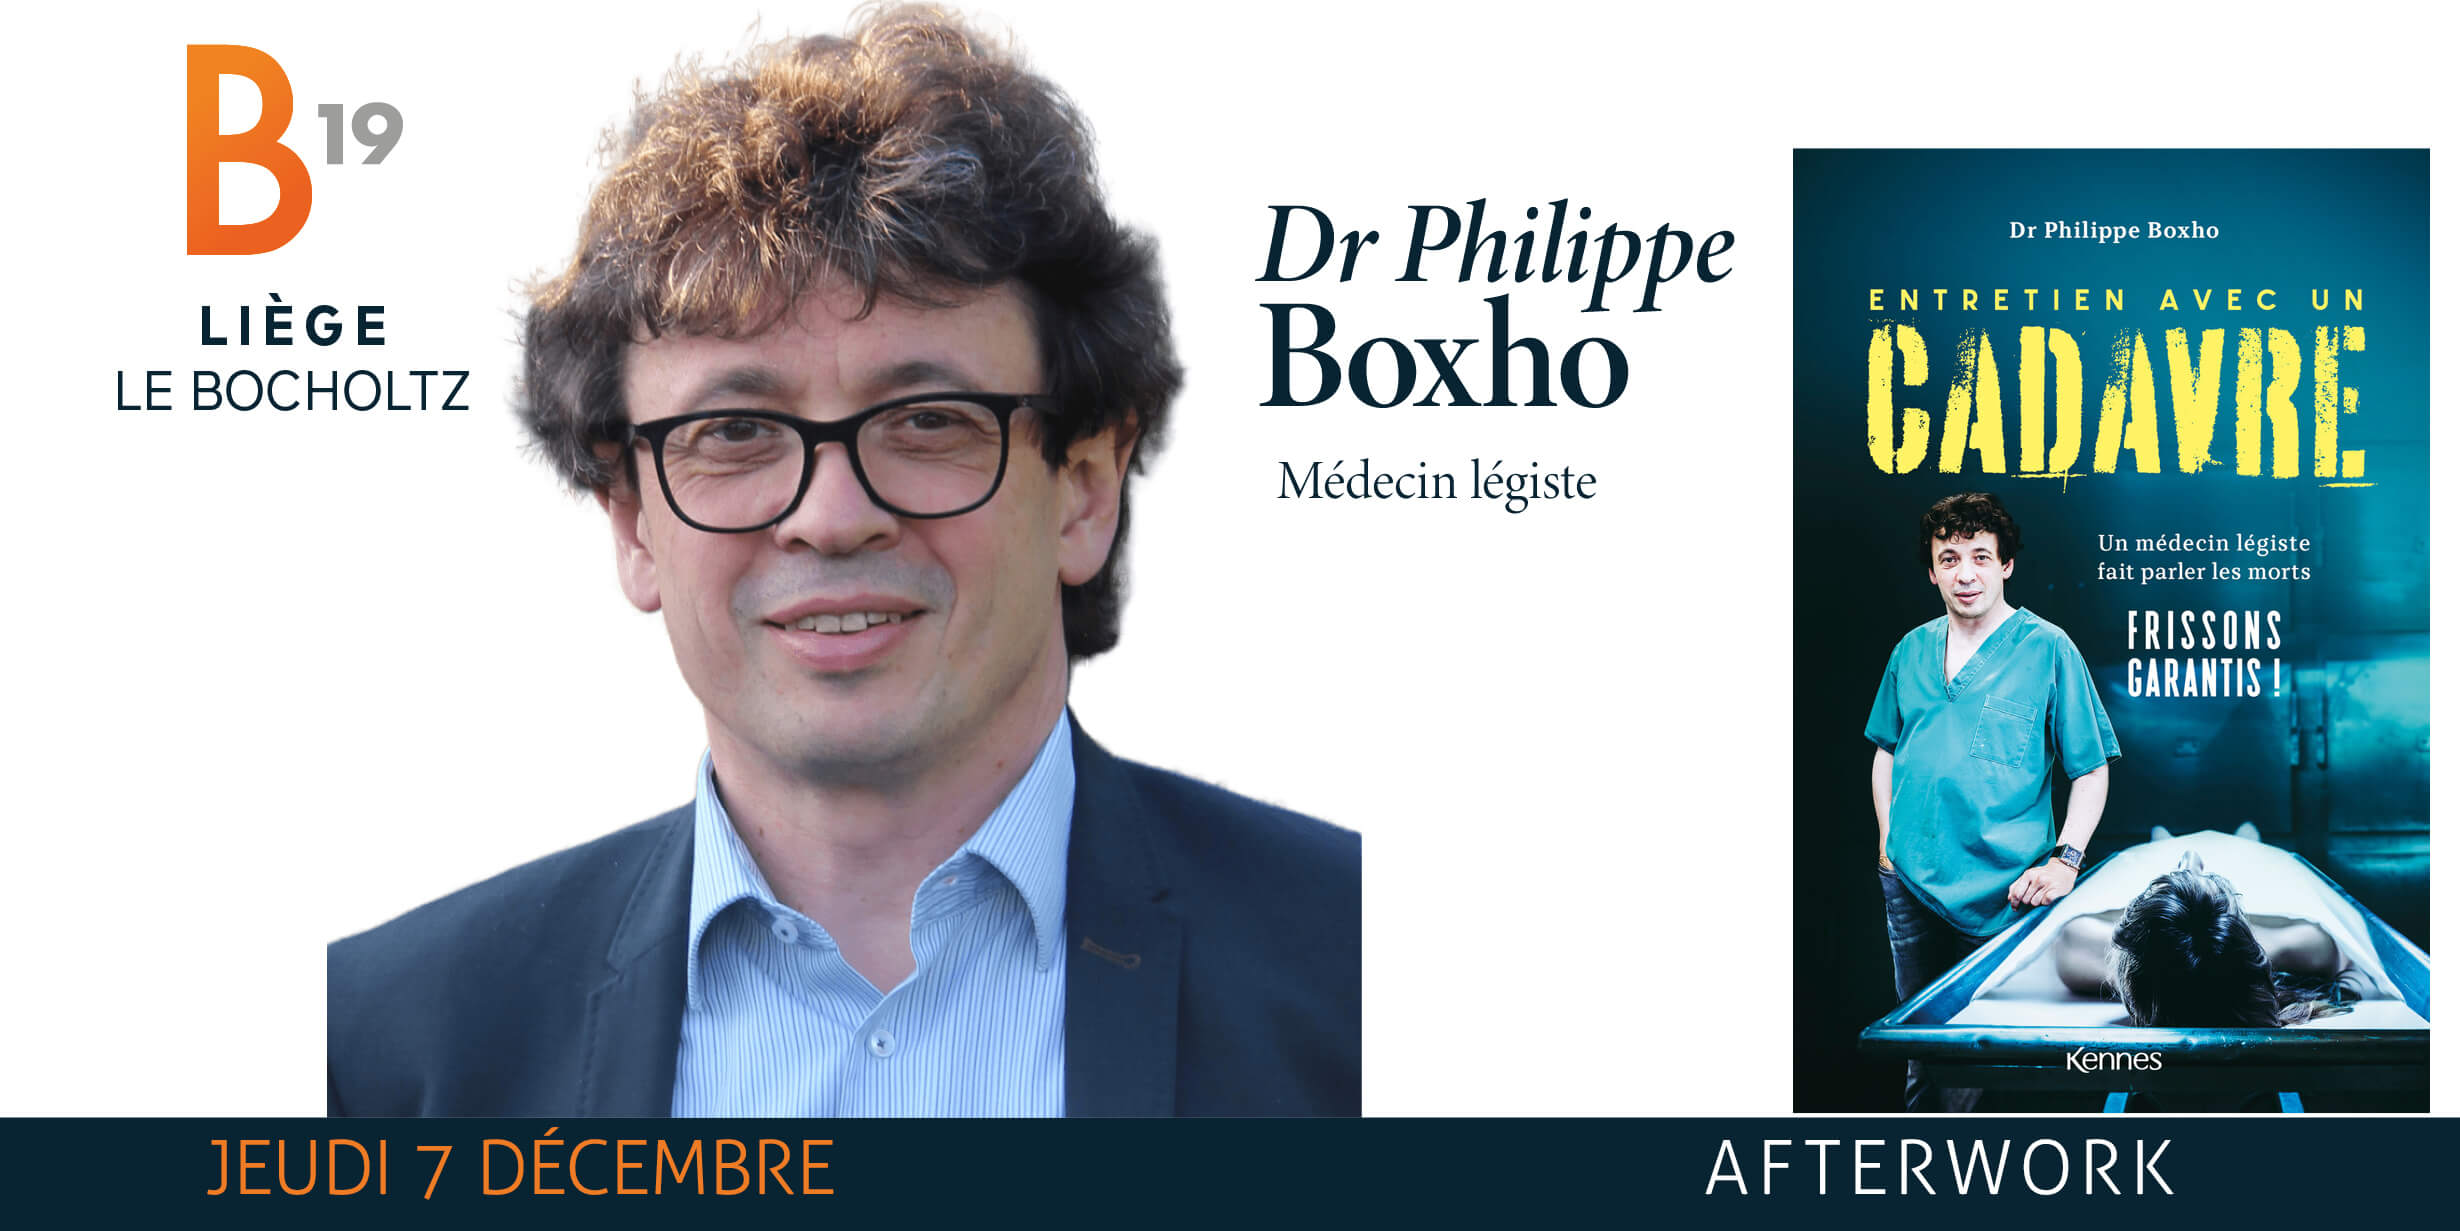 Les morts ont la parole / Dr Philippe Boxho - Détail